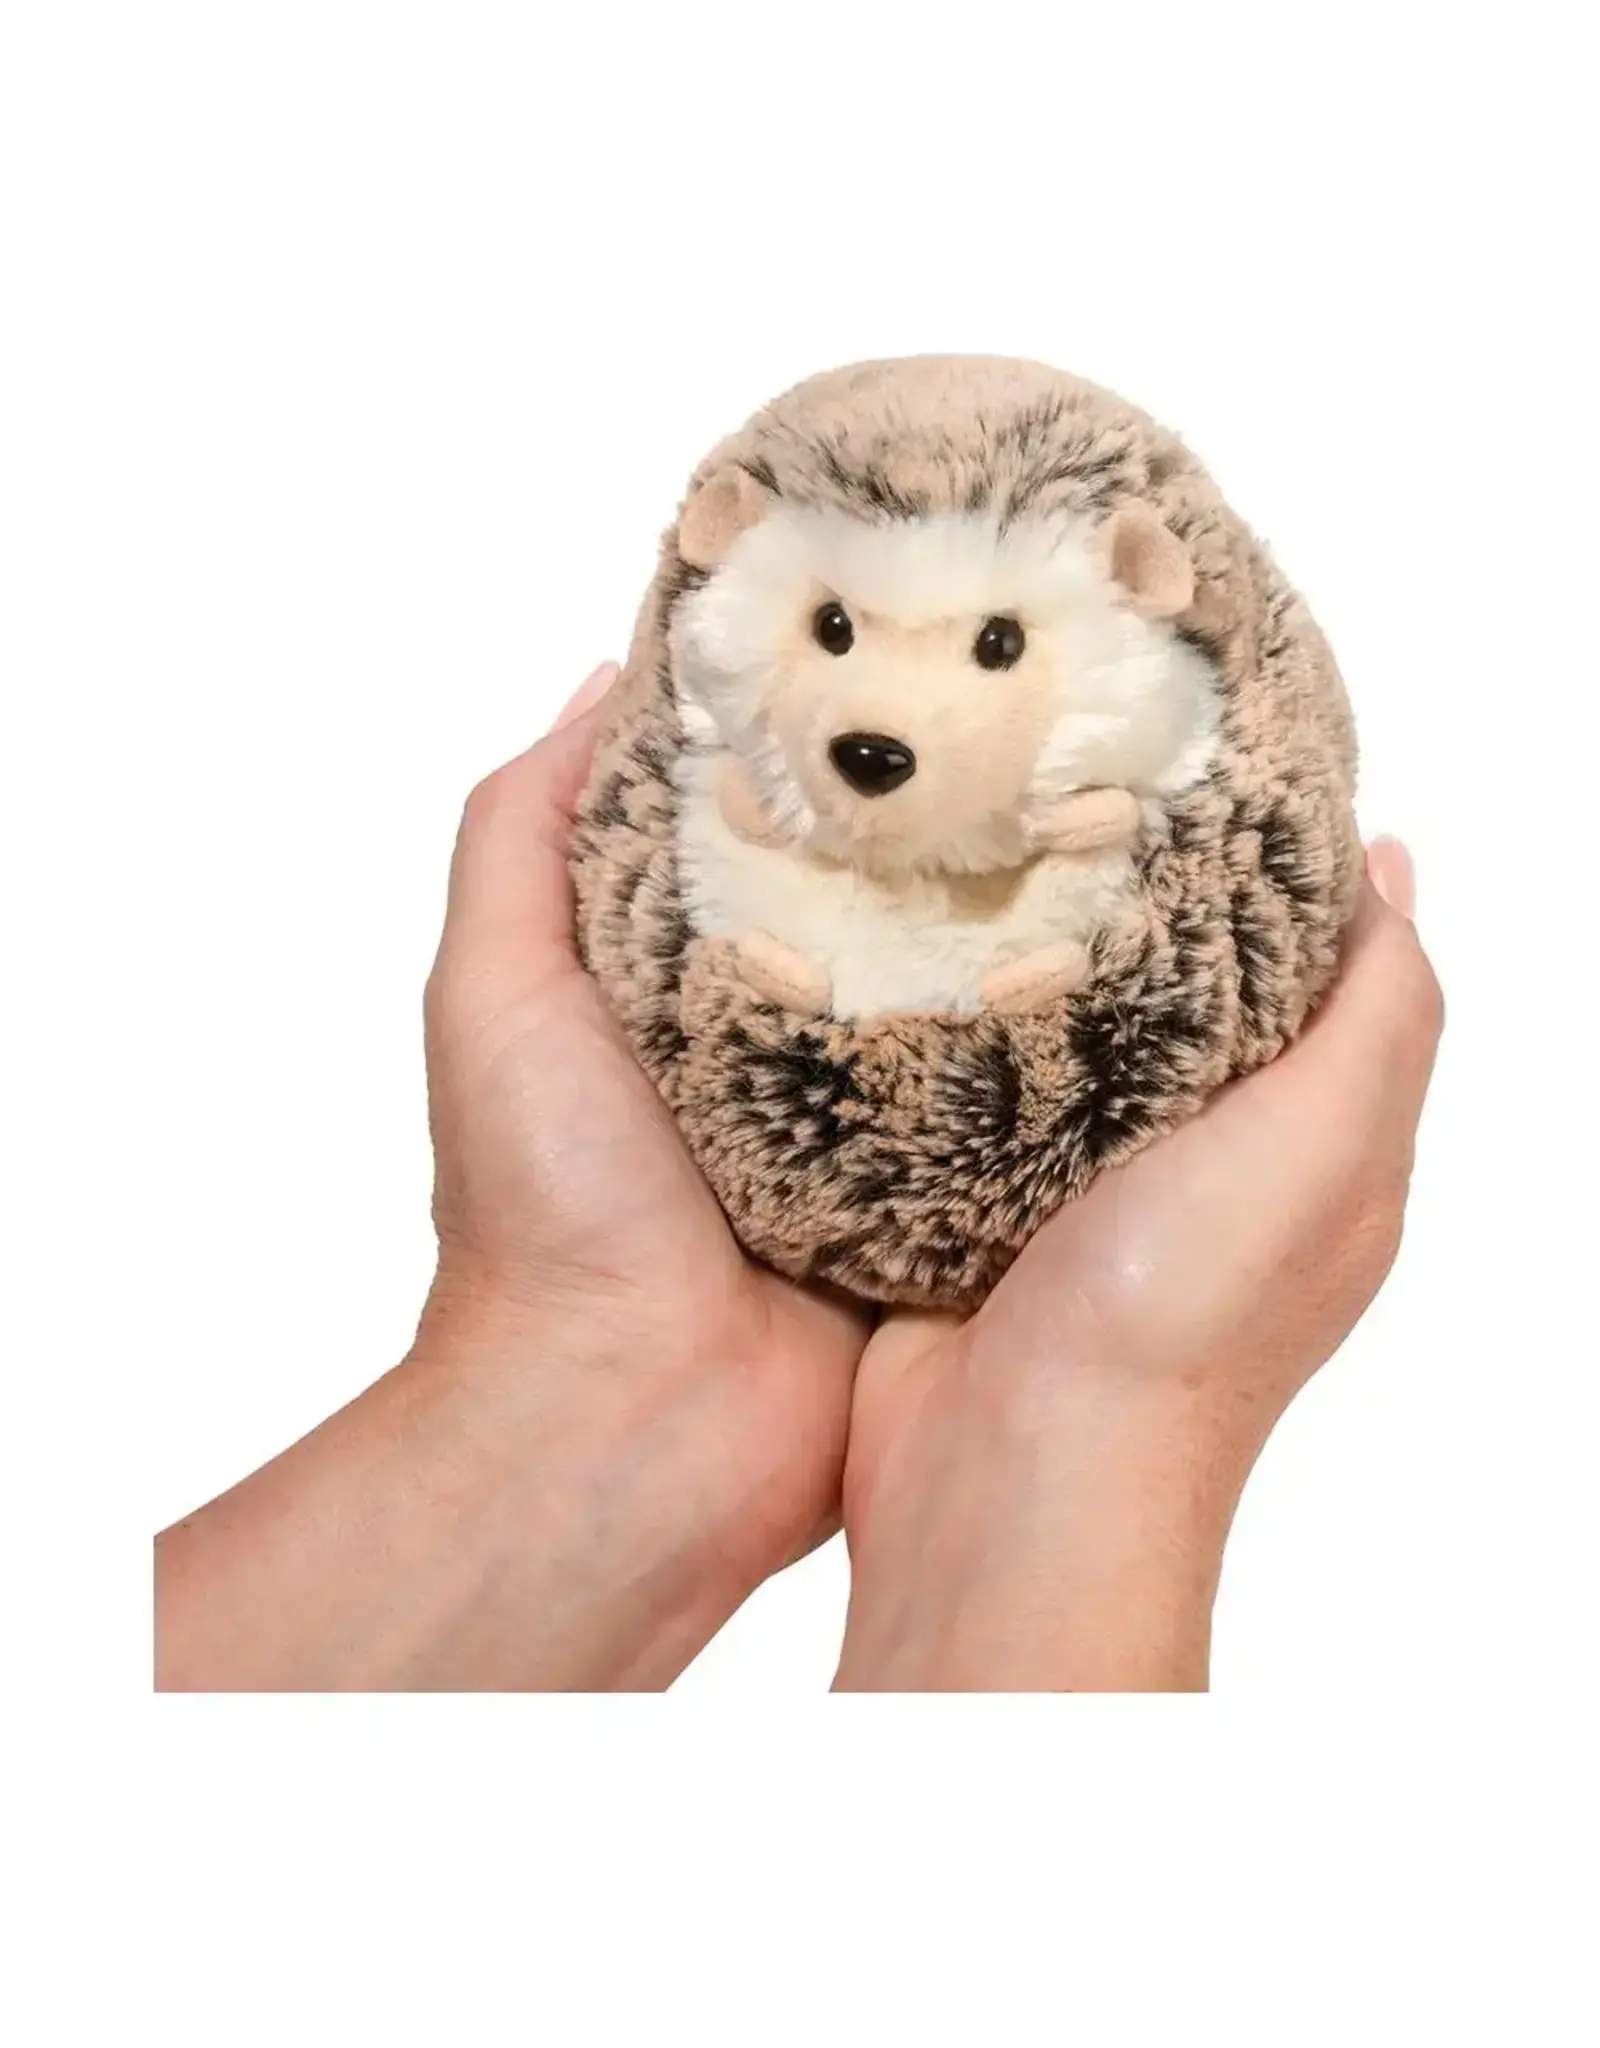 Douglas Spunky Hedgehog, Small